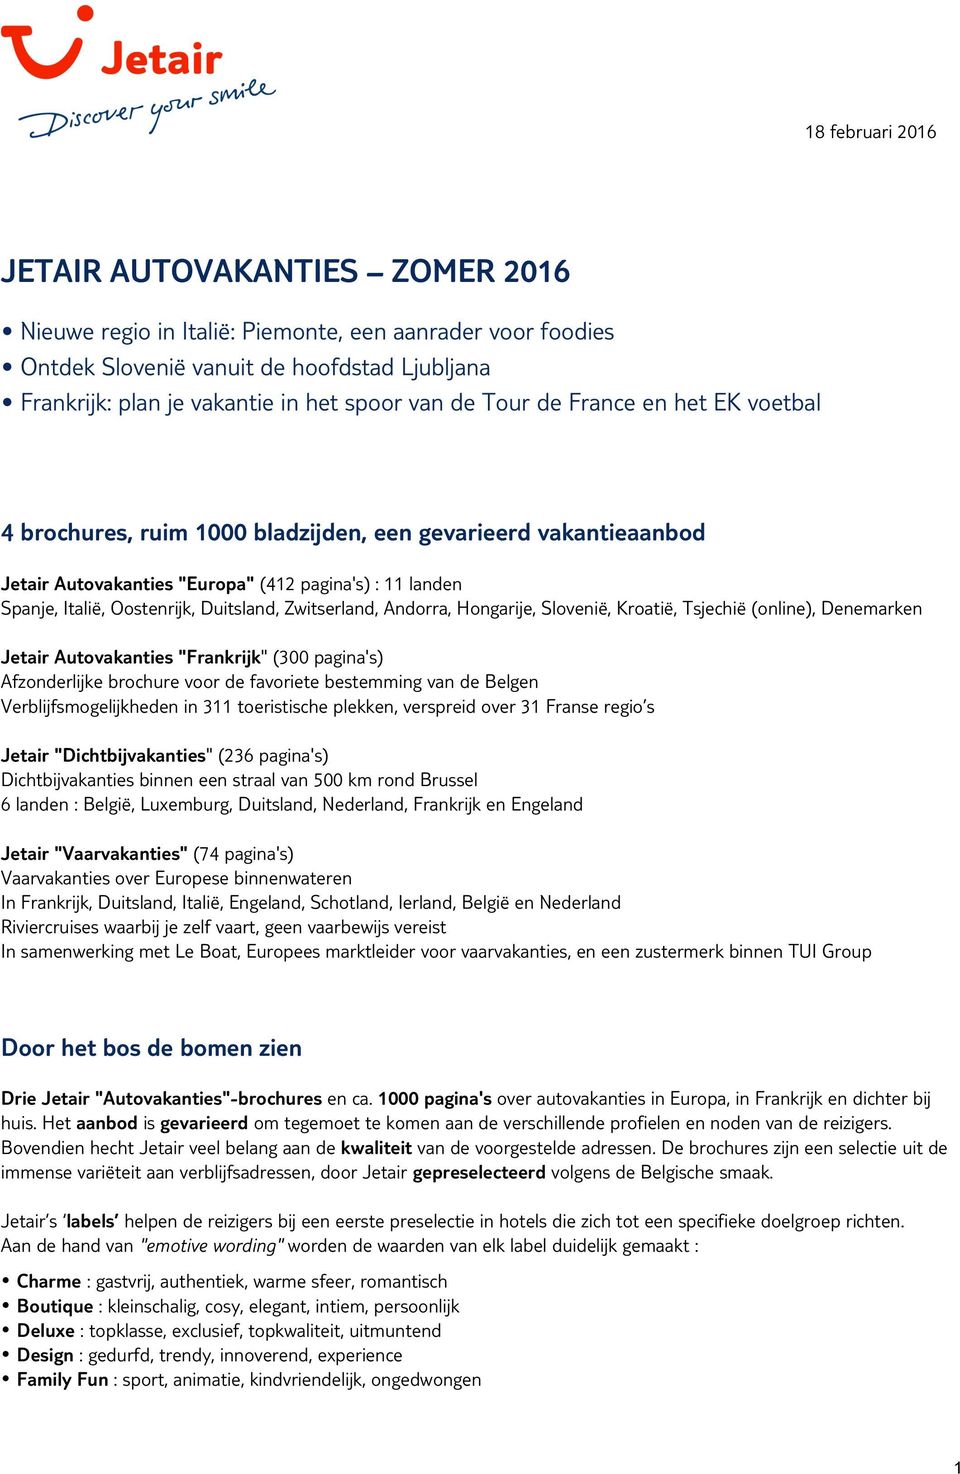 Zwitserland, Andorra, Hongarije, Slovenië, Kroatië, Tsjechië (online), Denemarken Jetair Autovakanties "Frankrijk" (300 pagina's) Afzonderlijke brochure voor de favoriete bestemming van de Belgen